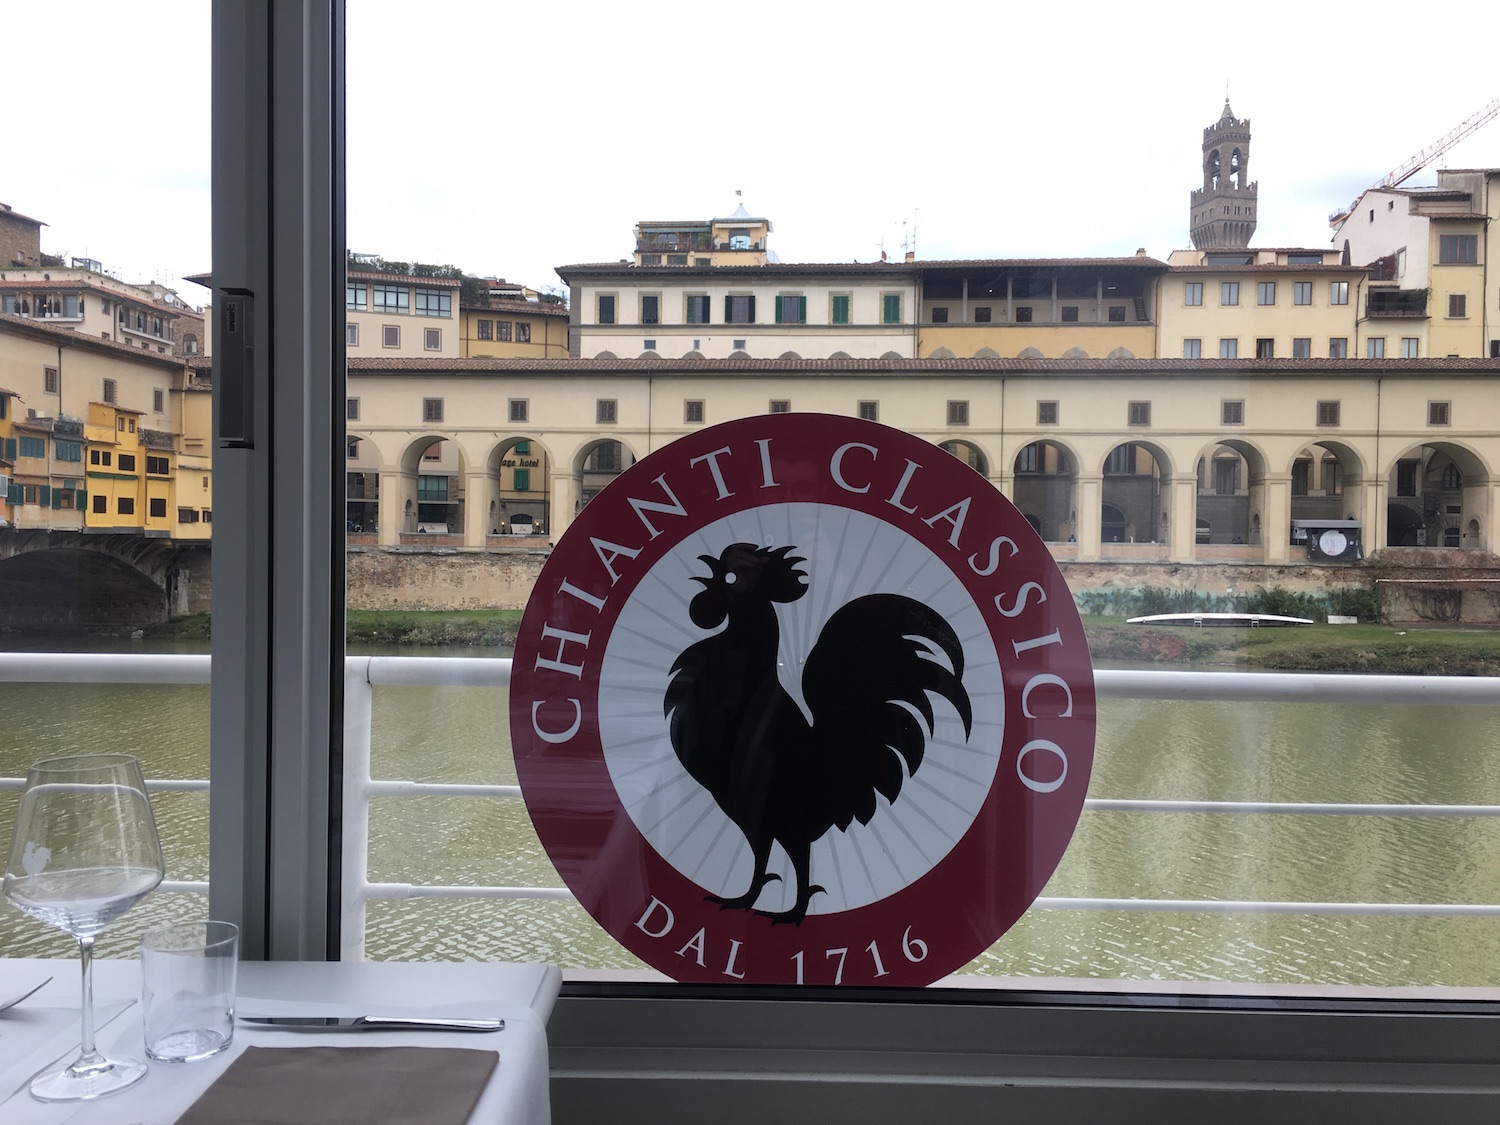 Amici del Chianti Classico, la nuova comunità di ristoratori selezionati dal Consorzio Chianti Classico sulla base delle loro carte dei vini